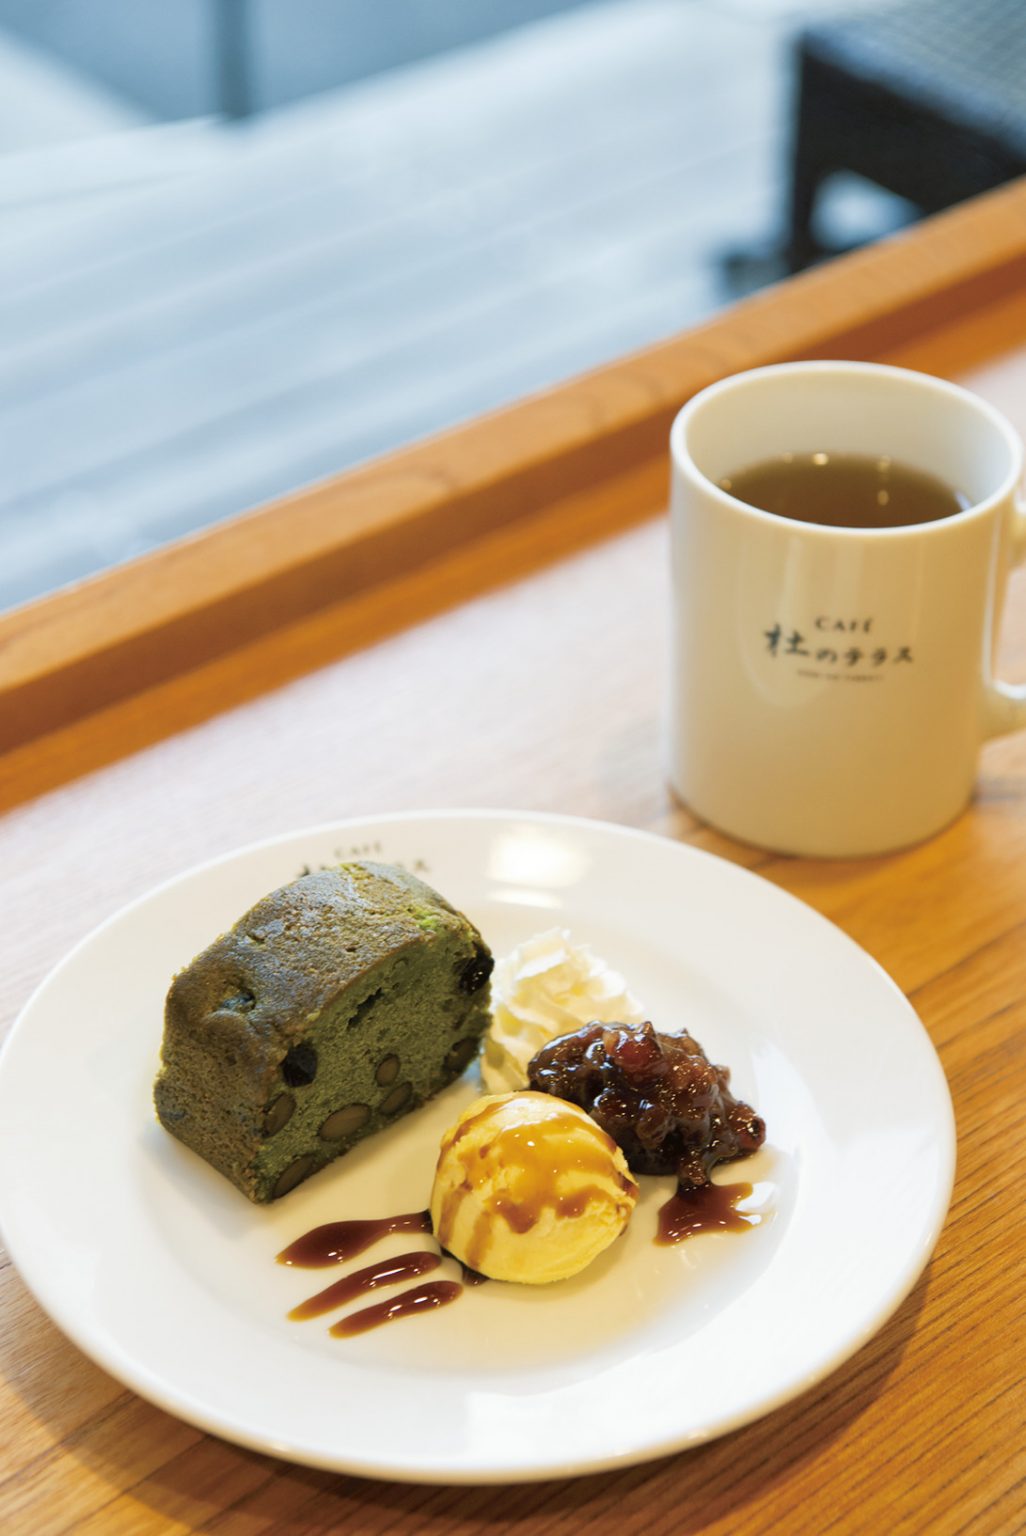 古式農法製天然山番茶「明治の山茶」とケーキのセット700円〜。